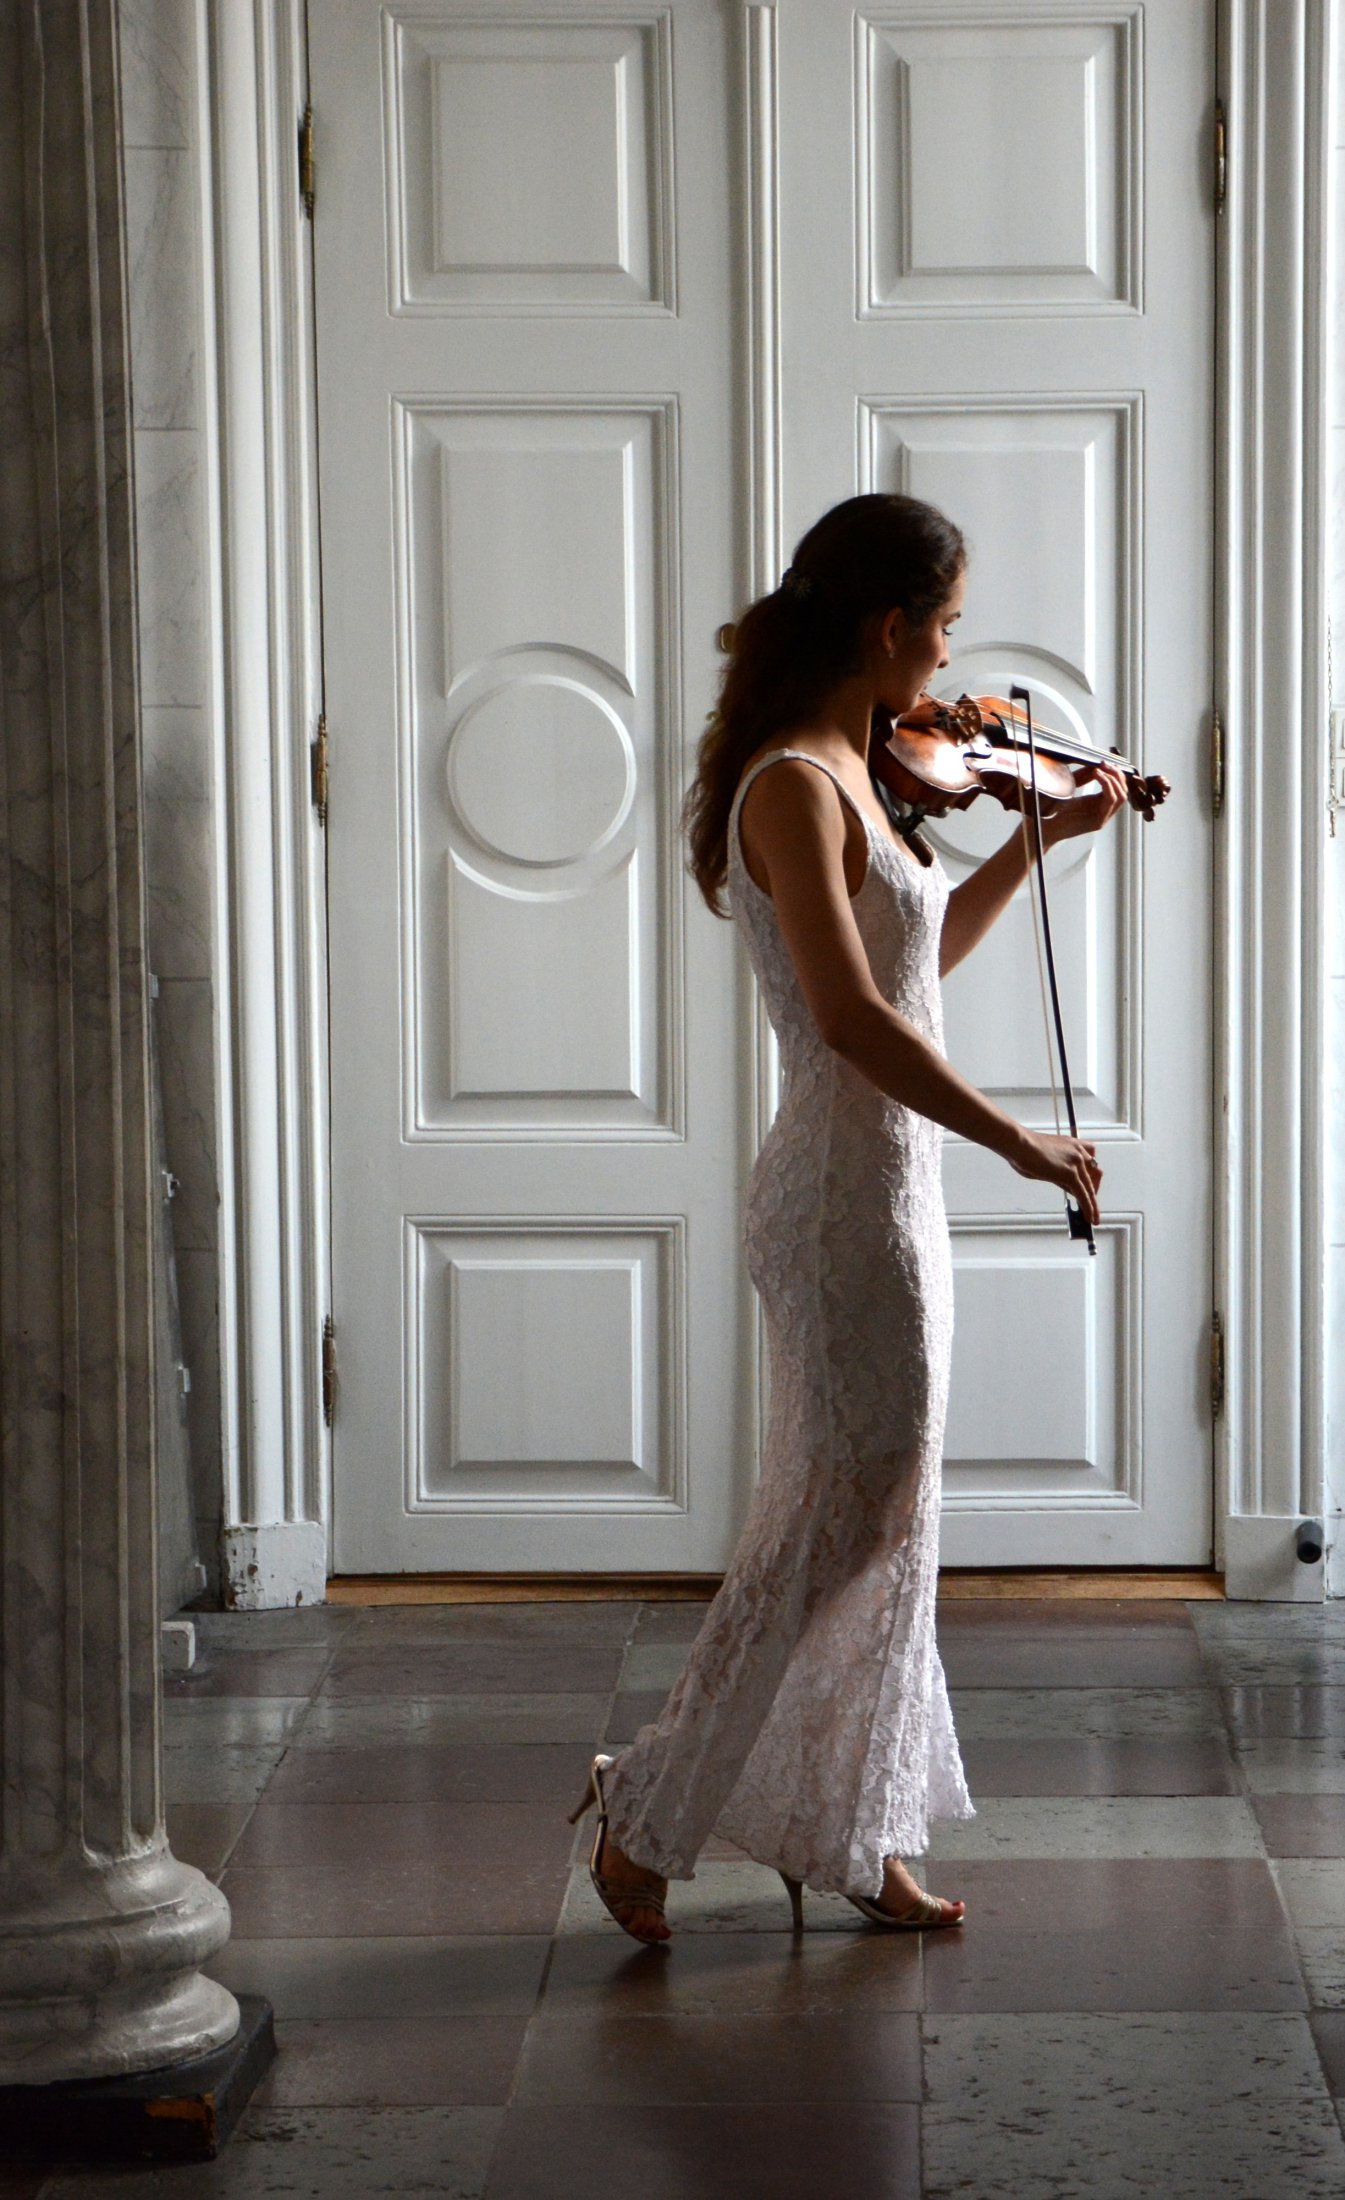 Violinpige I Foyer